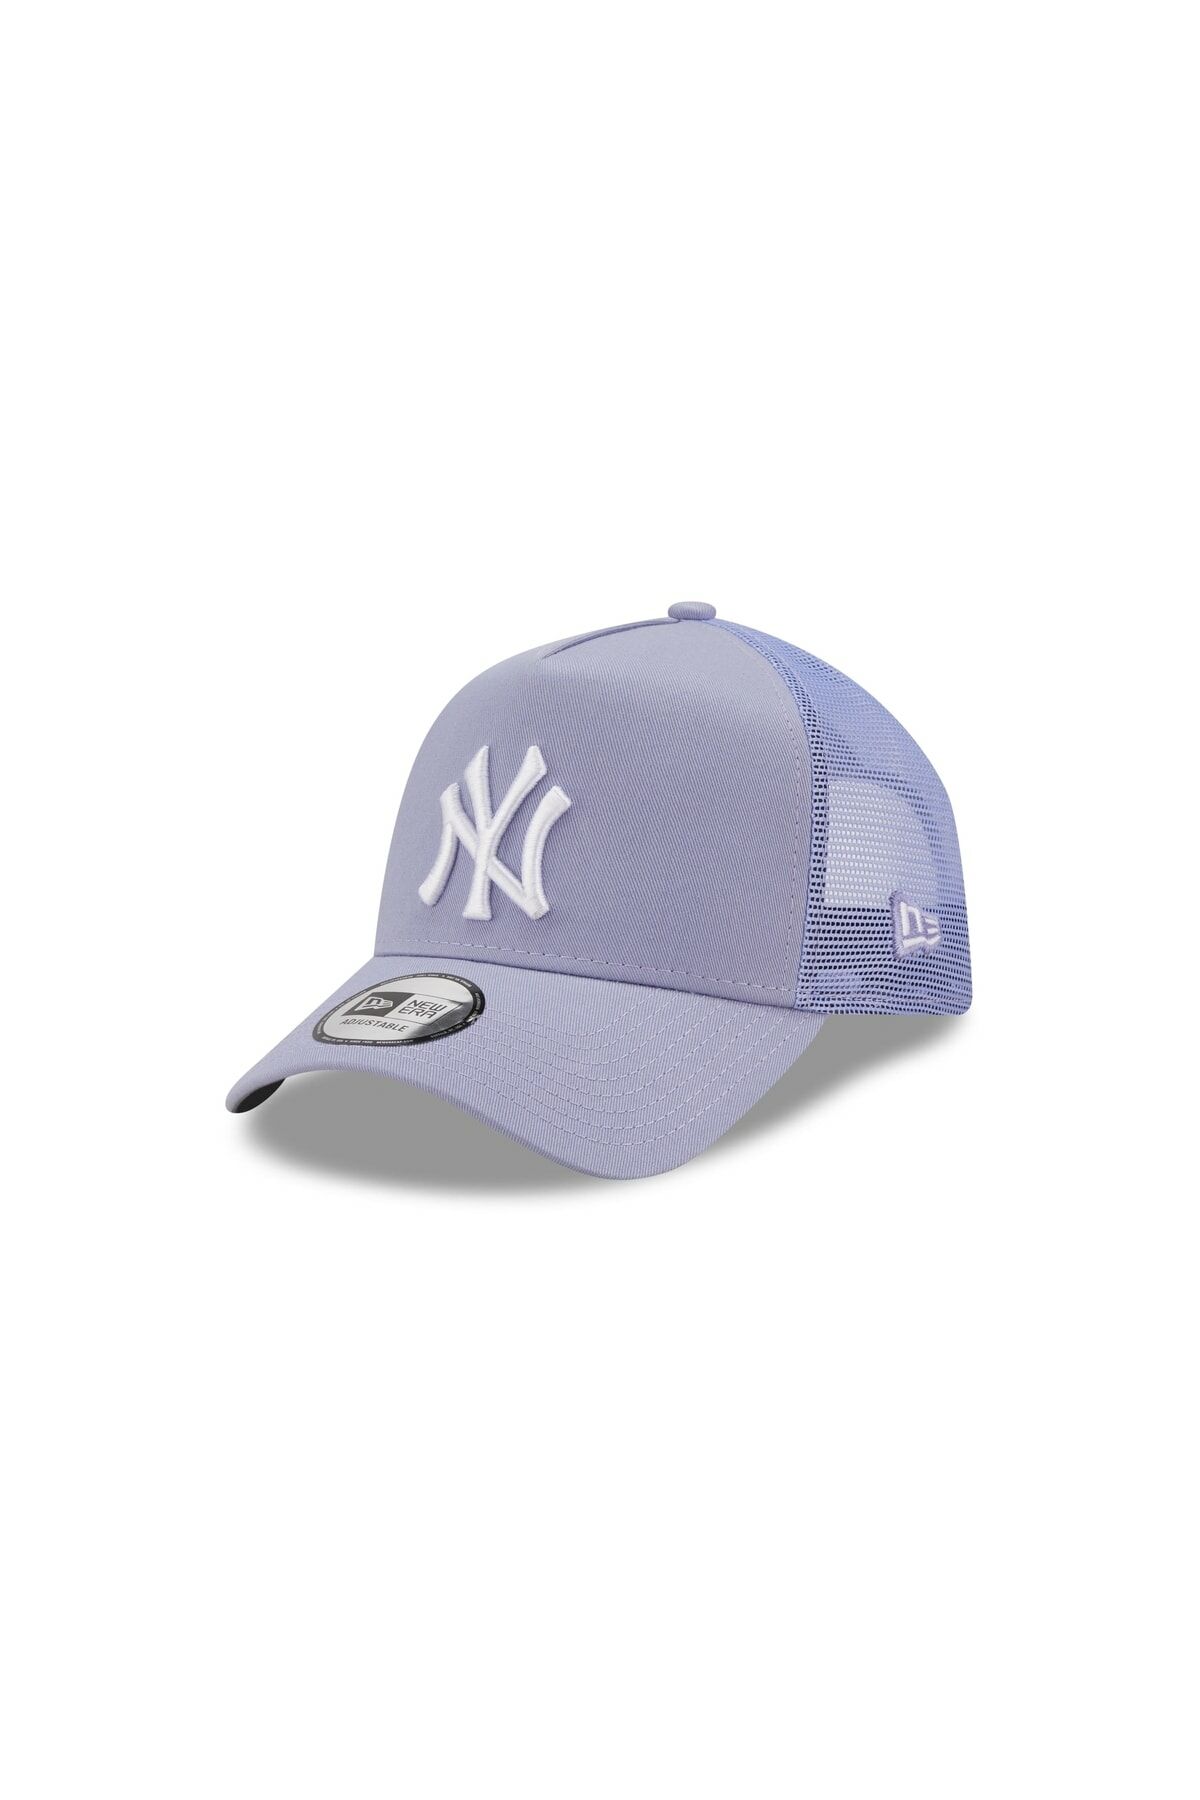 New Era New York Yankees 60222456